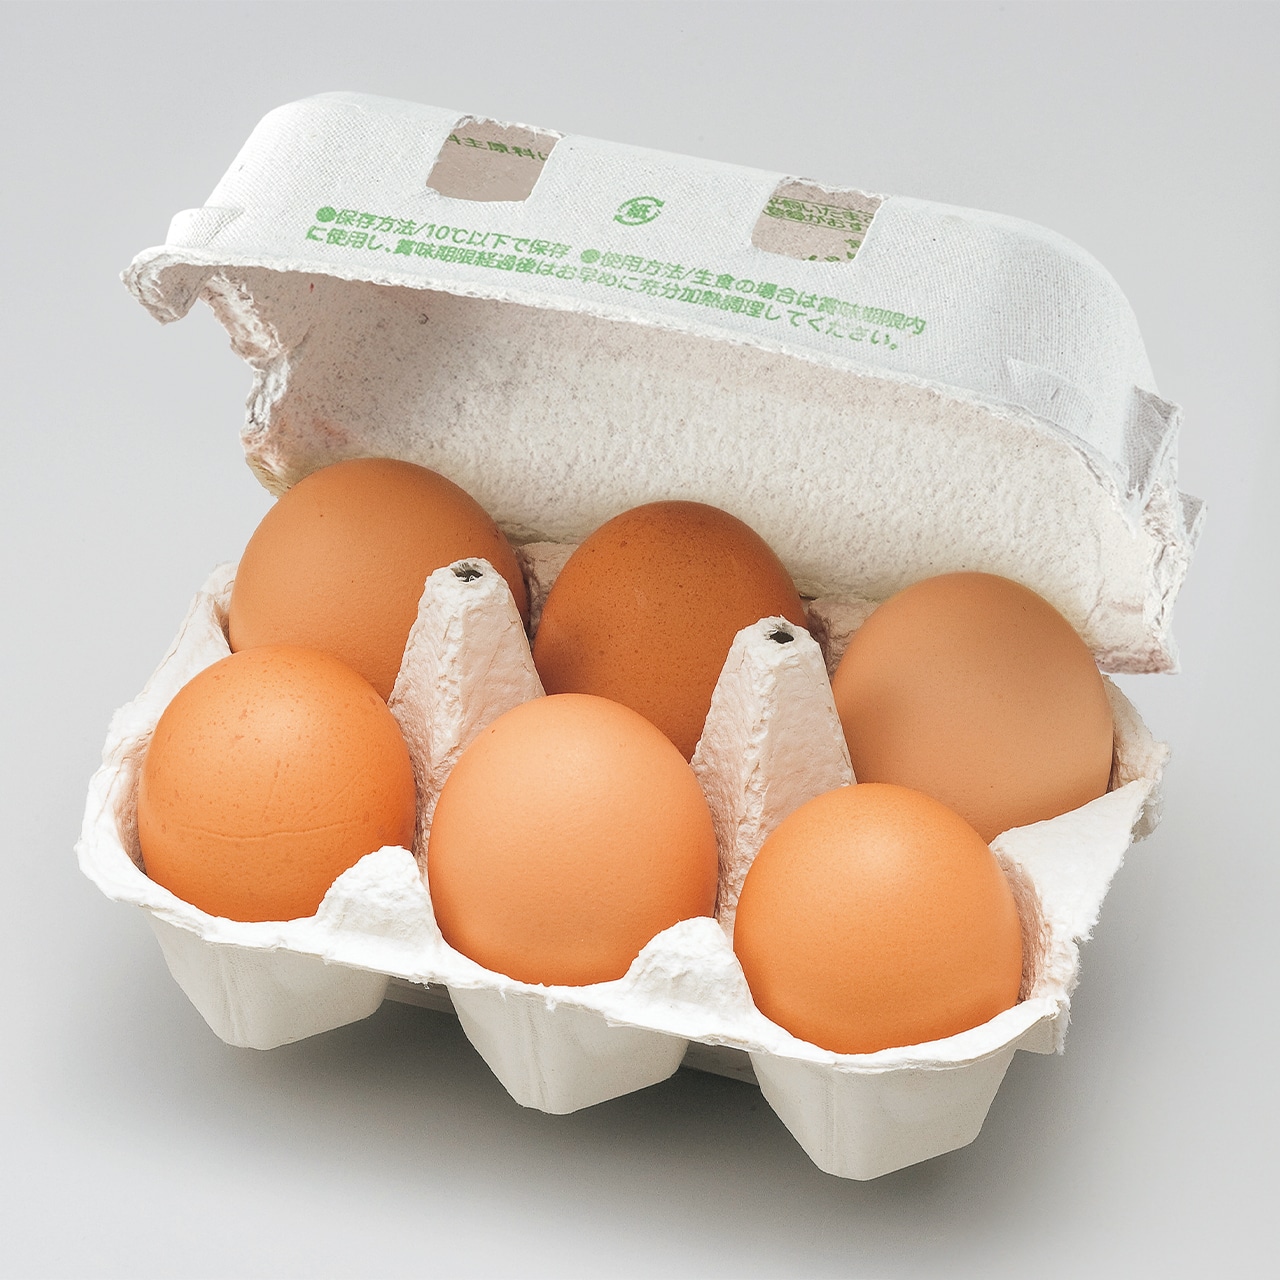 ●コア・フード平飼いたまご　6個（MS~LL）　¥376
 鶏舎の中を自由に走り回れる環境で飼育された鶏の卵。厳選した飼料には、米ぬかなどを使った発酵飼料も配合。鶏の腸内環境が整えられることで、うまれた卵は濃厚な味わいに。